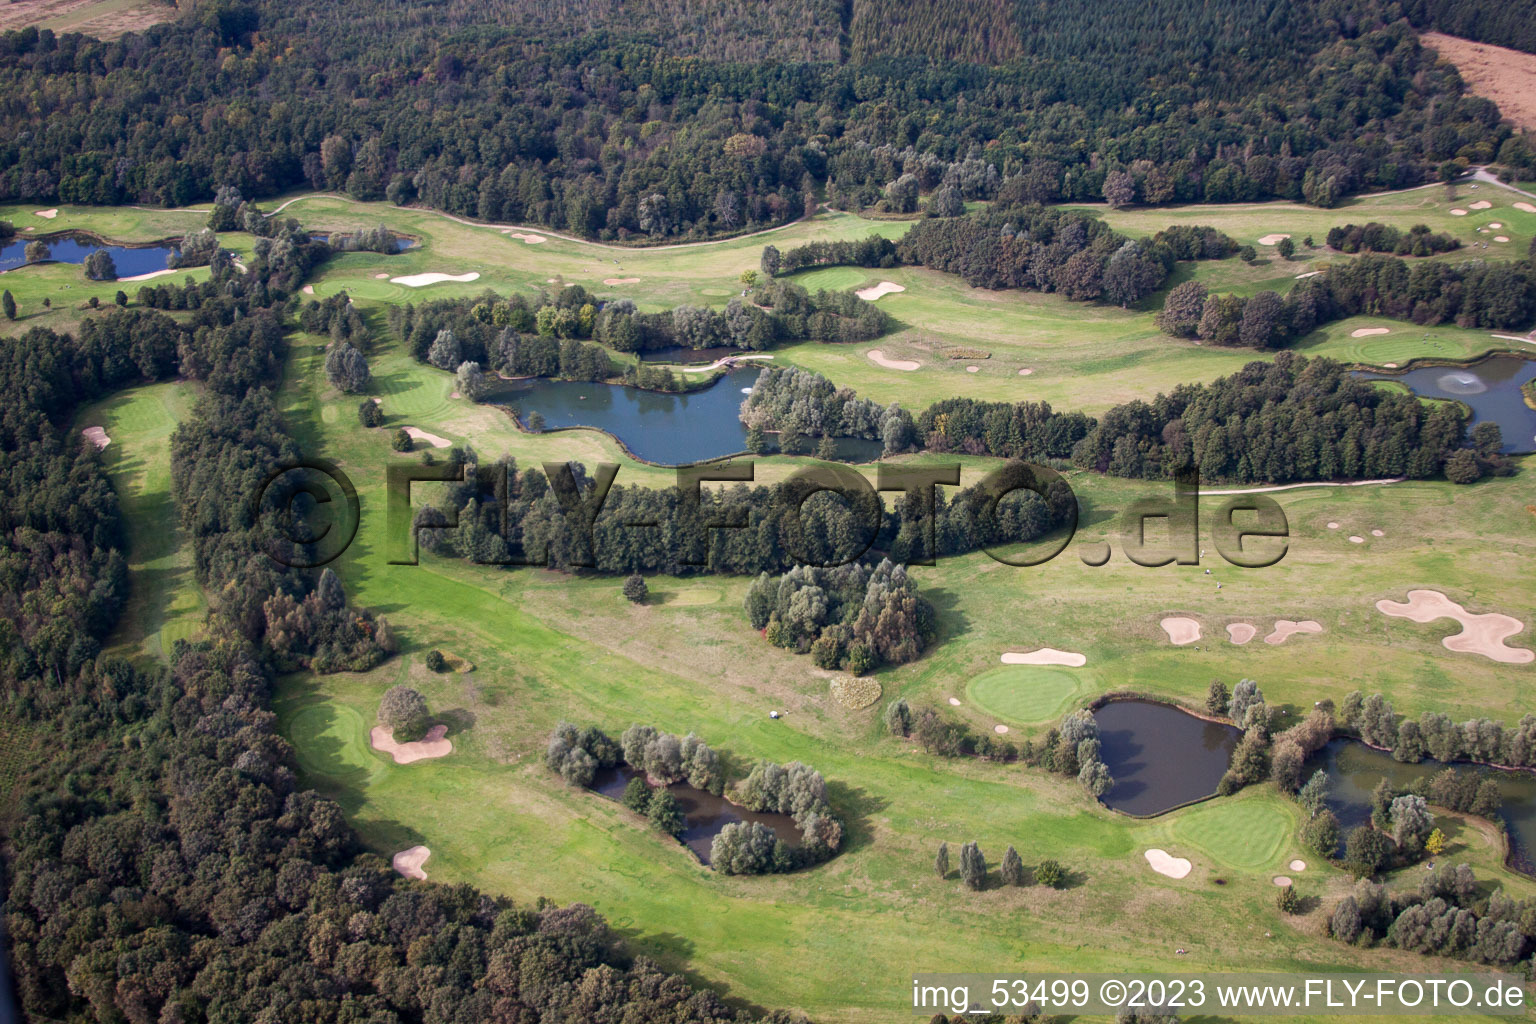 Baden-Baden Golf Club Soufflenheim in Soufflenheim in the state Bas-Rhin, France from a drone